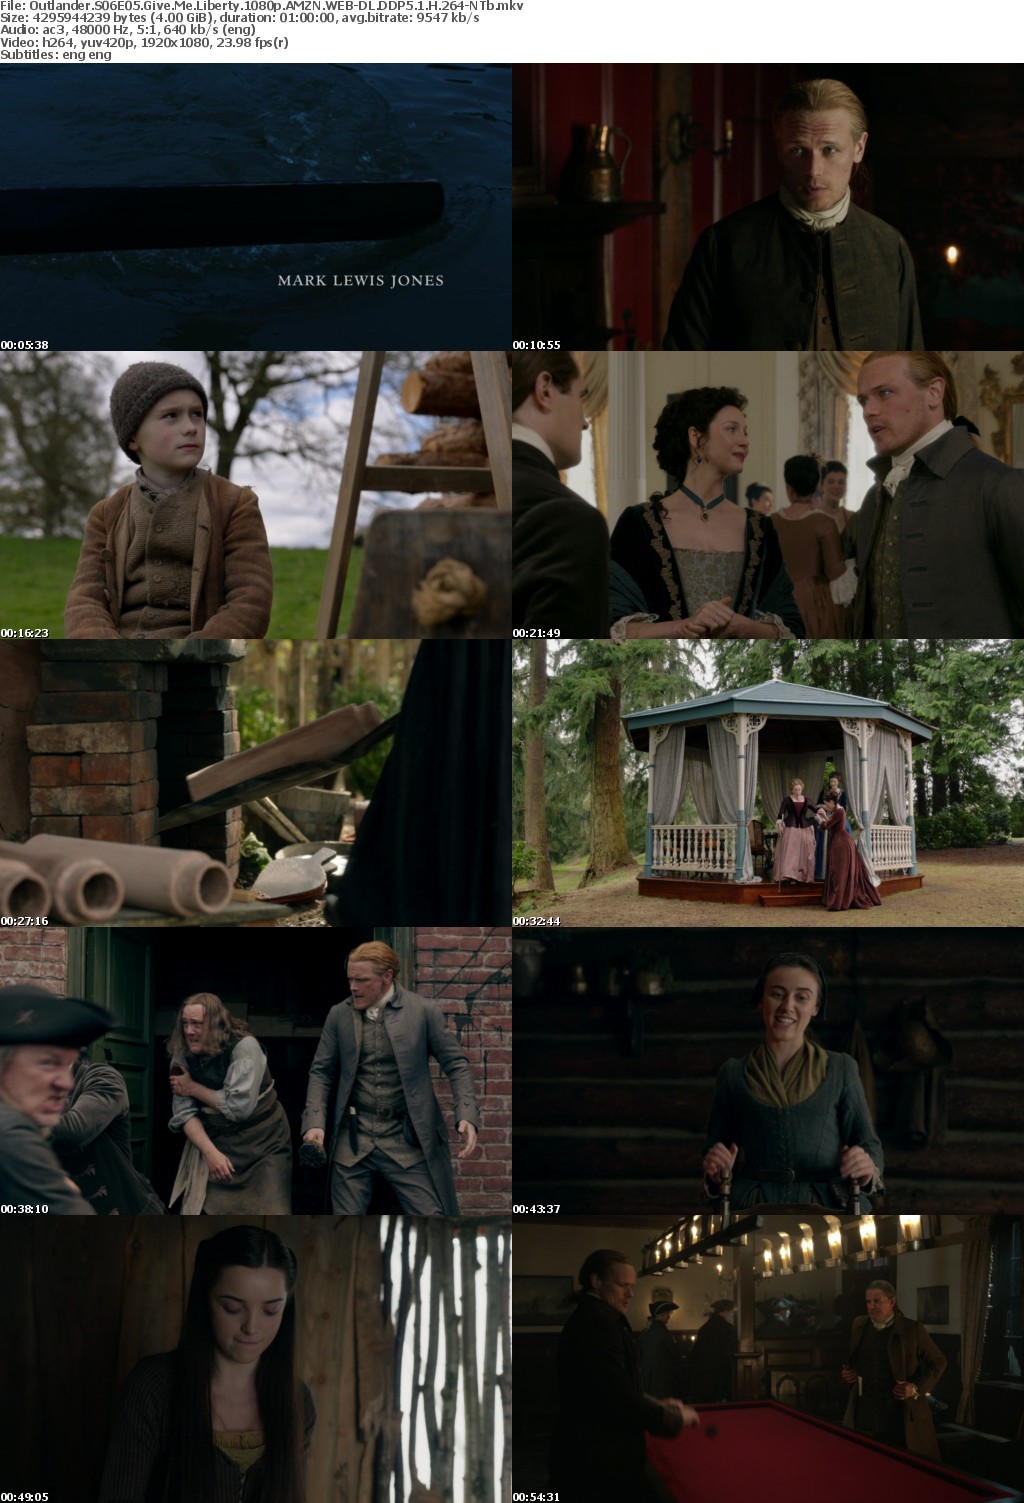 Outlander S06E05 Give Me Liberty 1080p AMZN WEBRip DDP5 1 x264-NTb